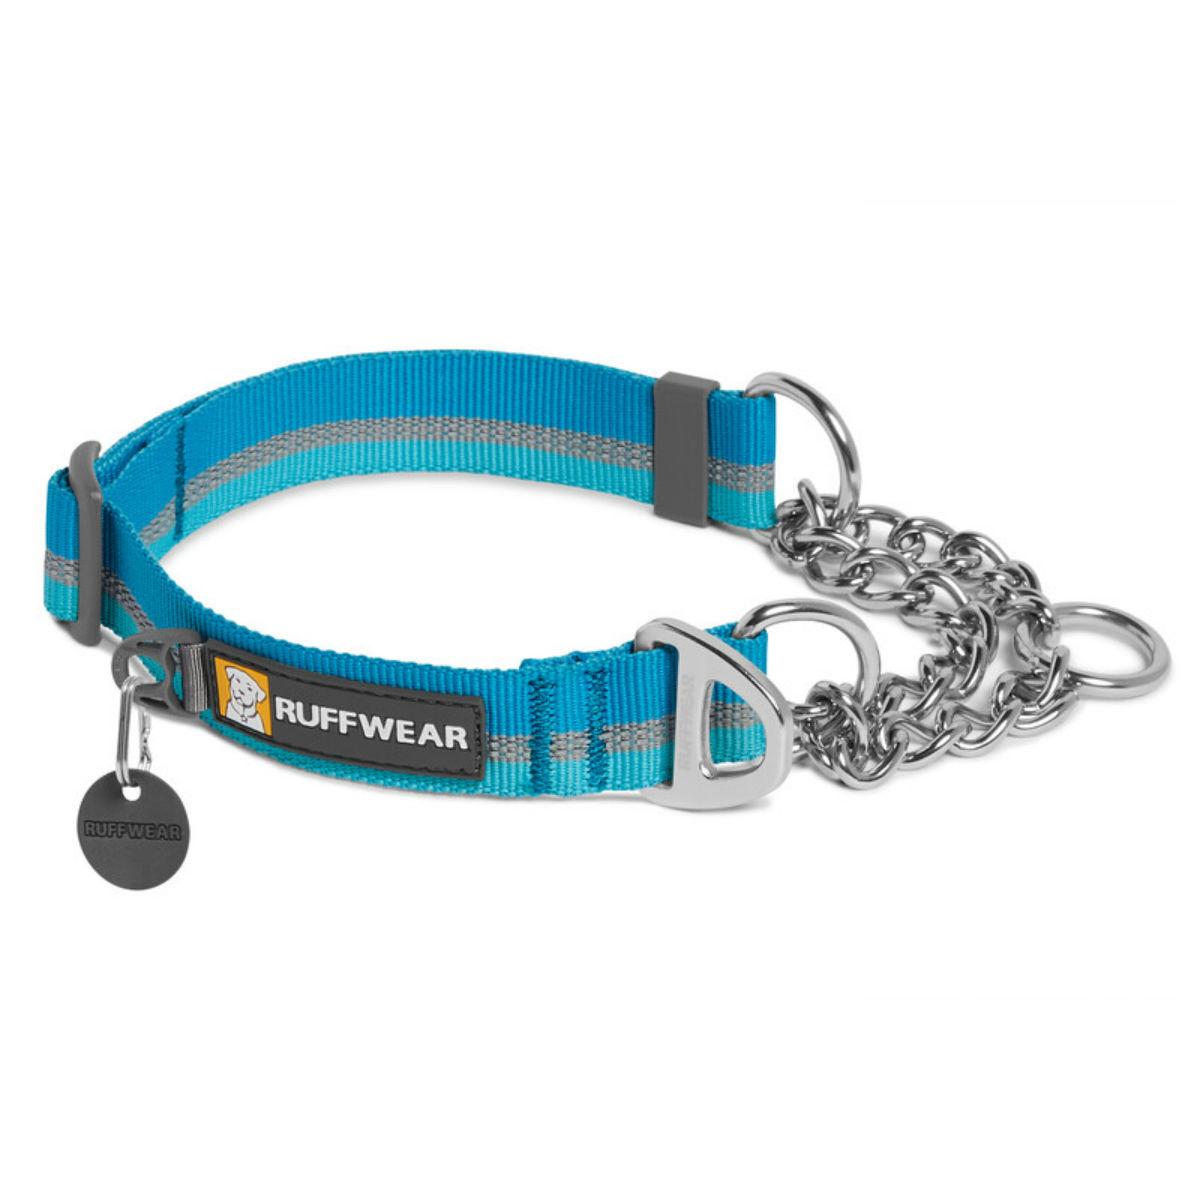 Chain Reaction Dog Collar by RuffWear - Blue Dusk